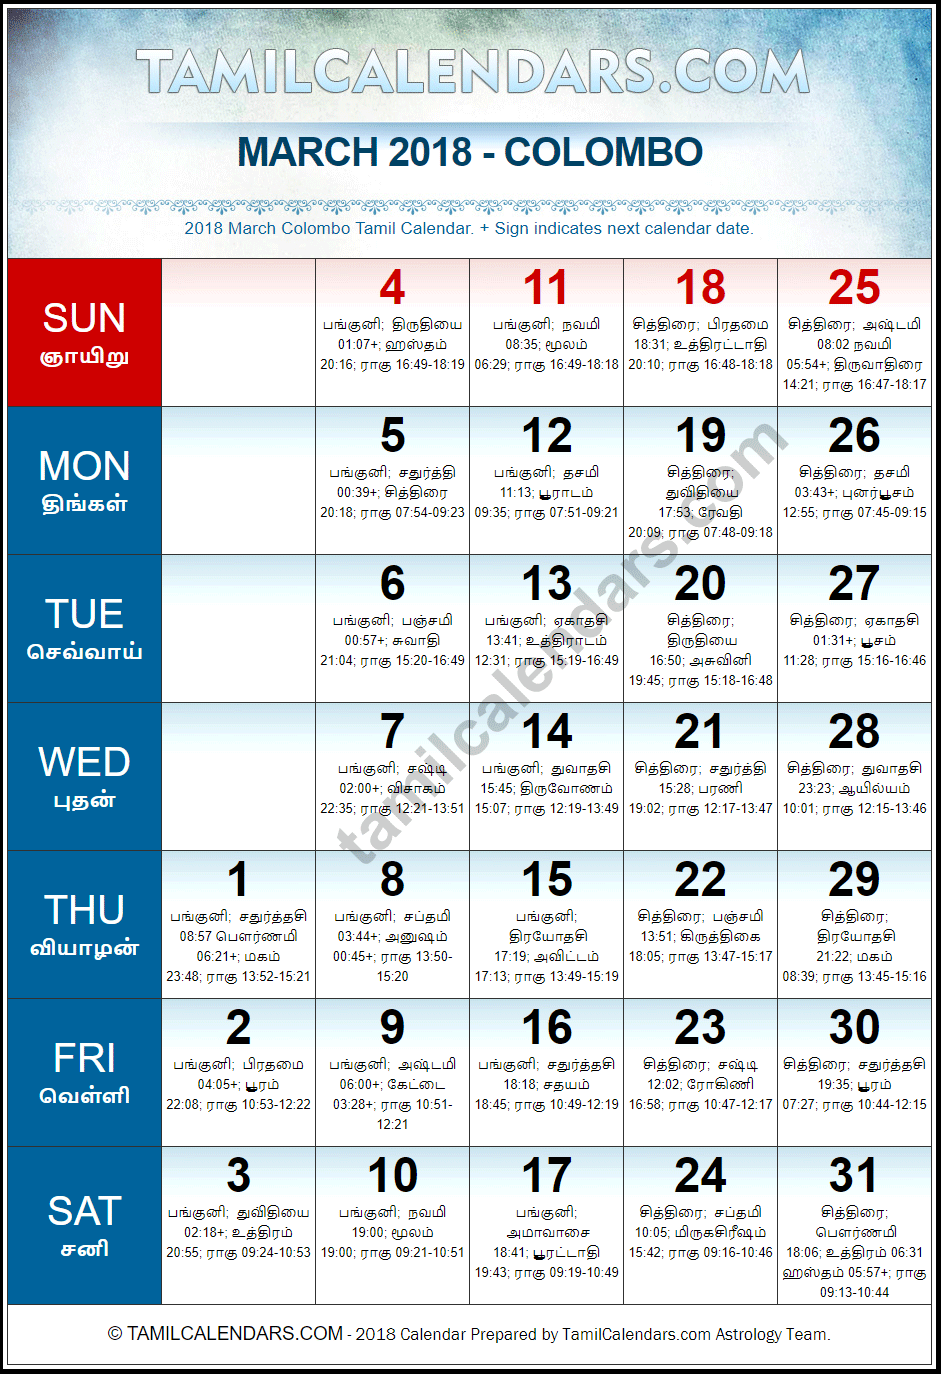 March 2018 Tamil Calendar for Sri Lanka (Colombo)